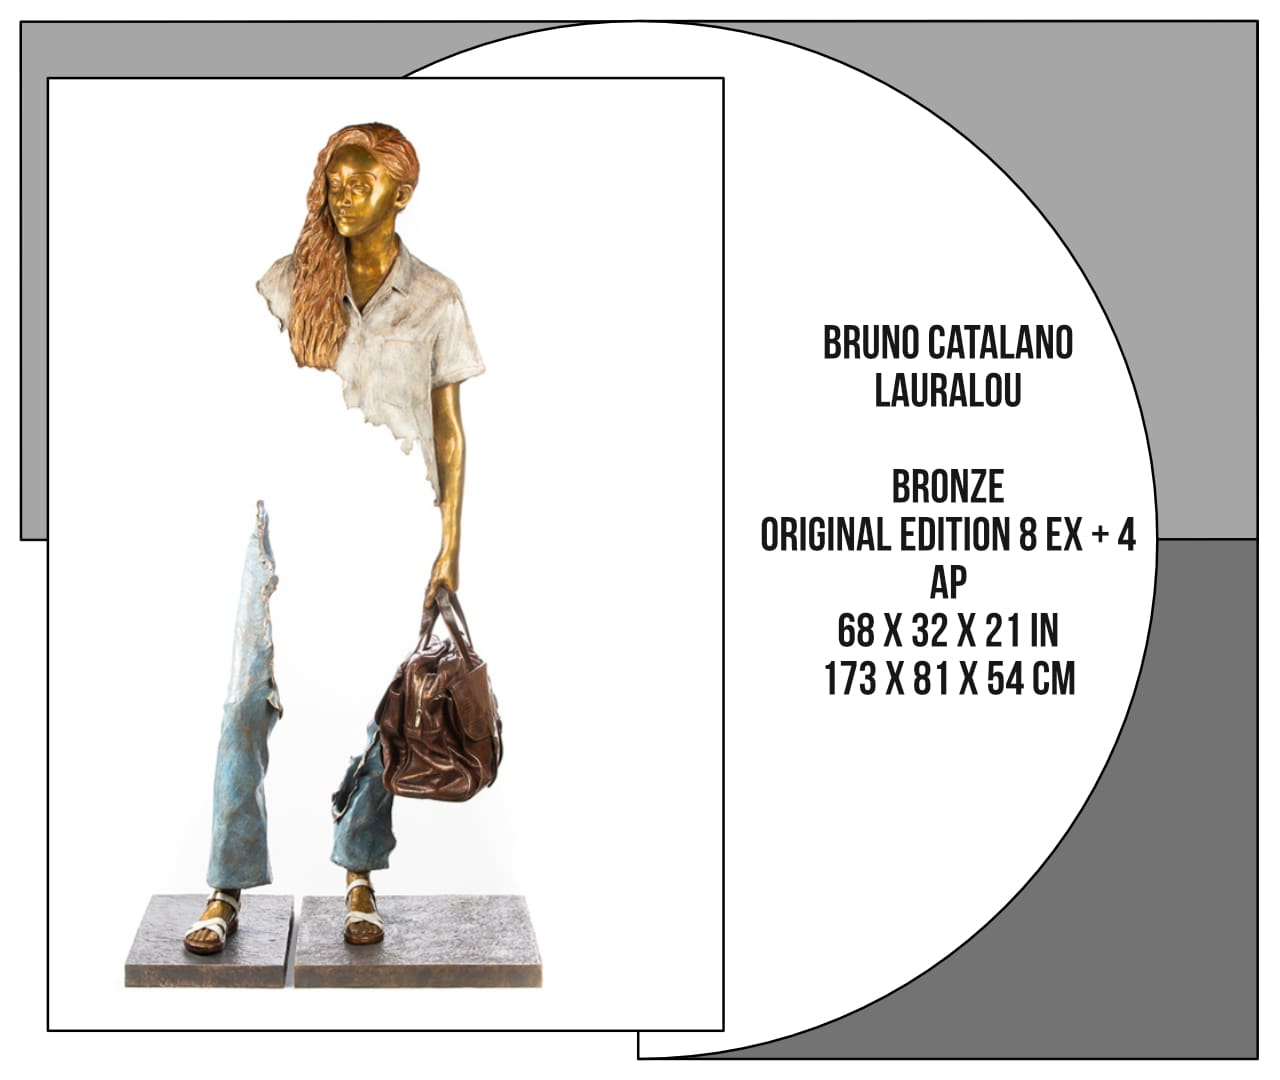 Bruno Catalano - Lauralou - bronze original edition 8 ex + 4 AP 68 x 32 x 21 in 173 x 81 x 54 cm